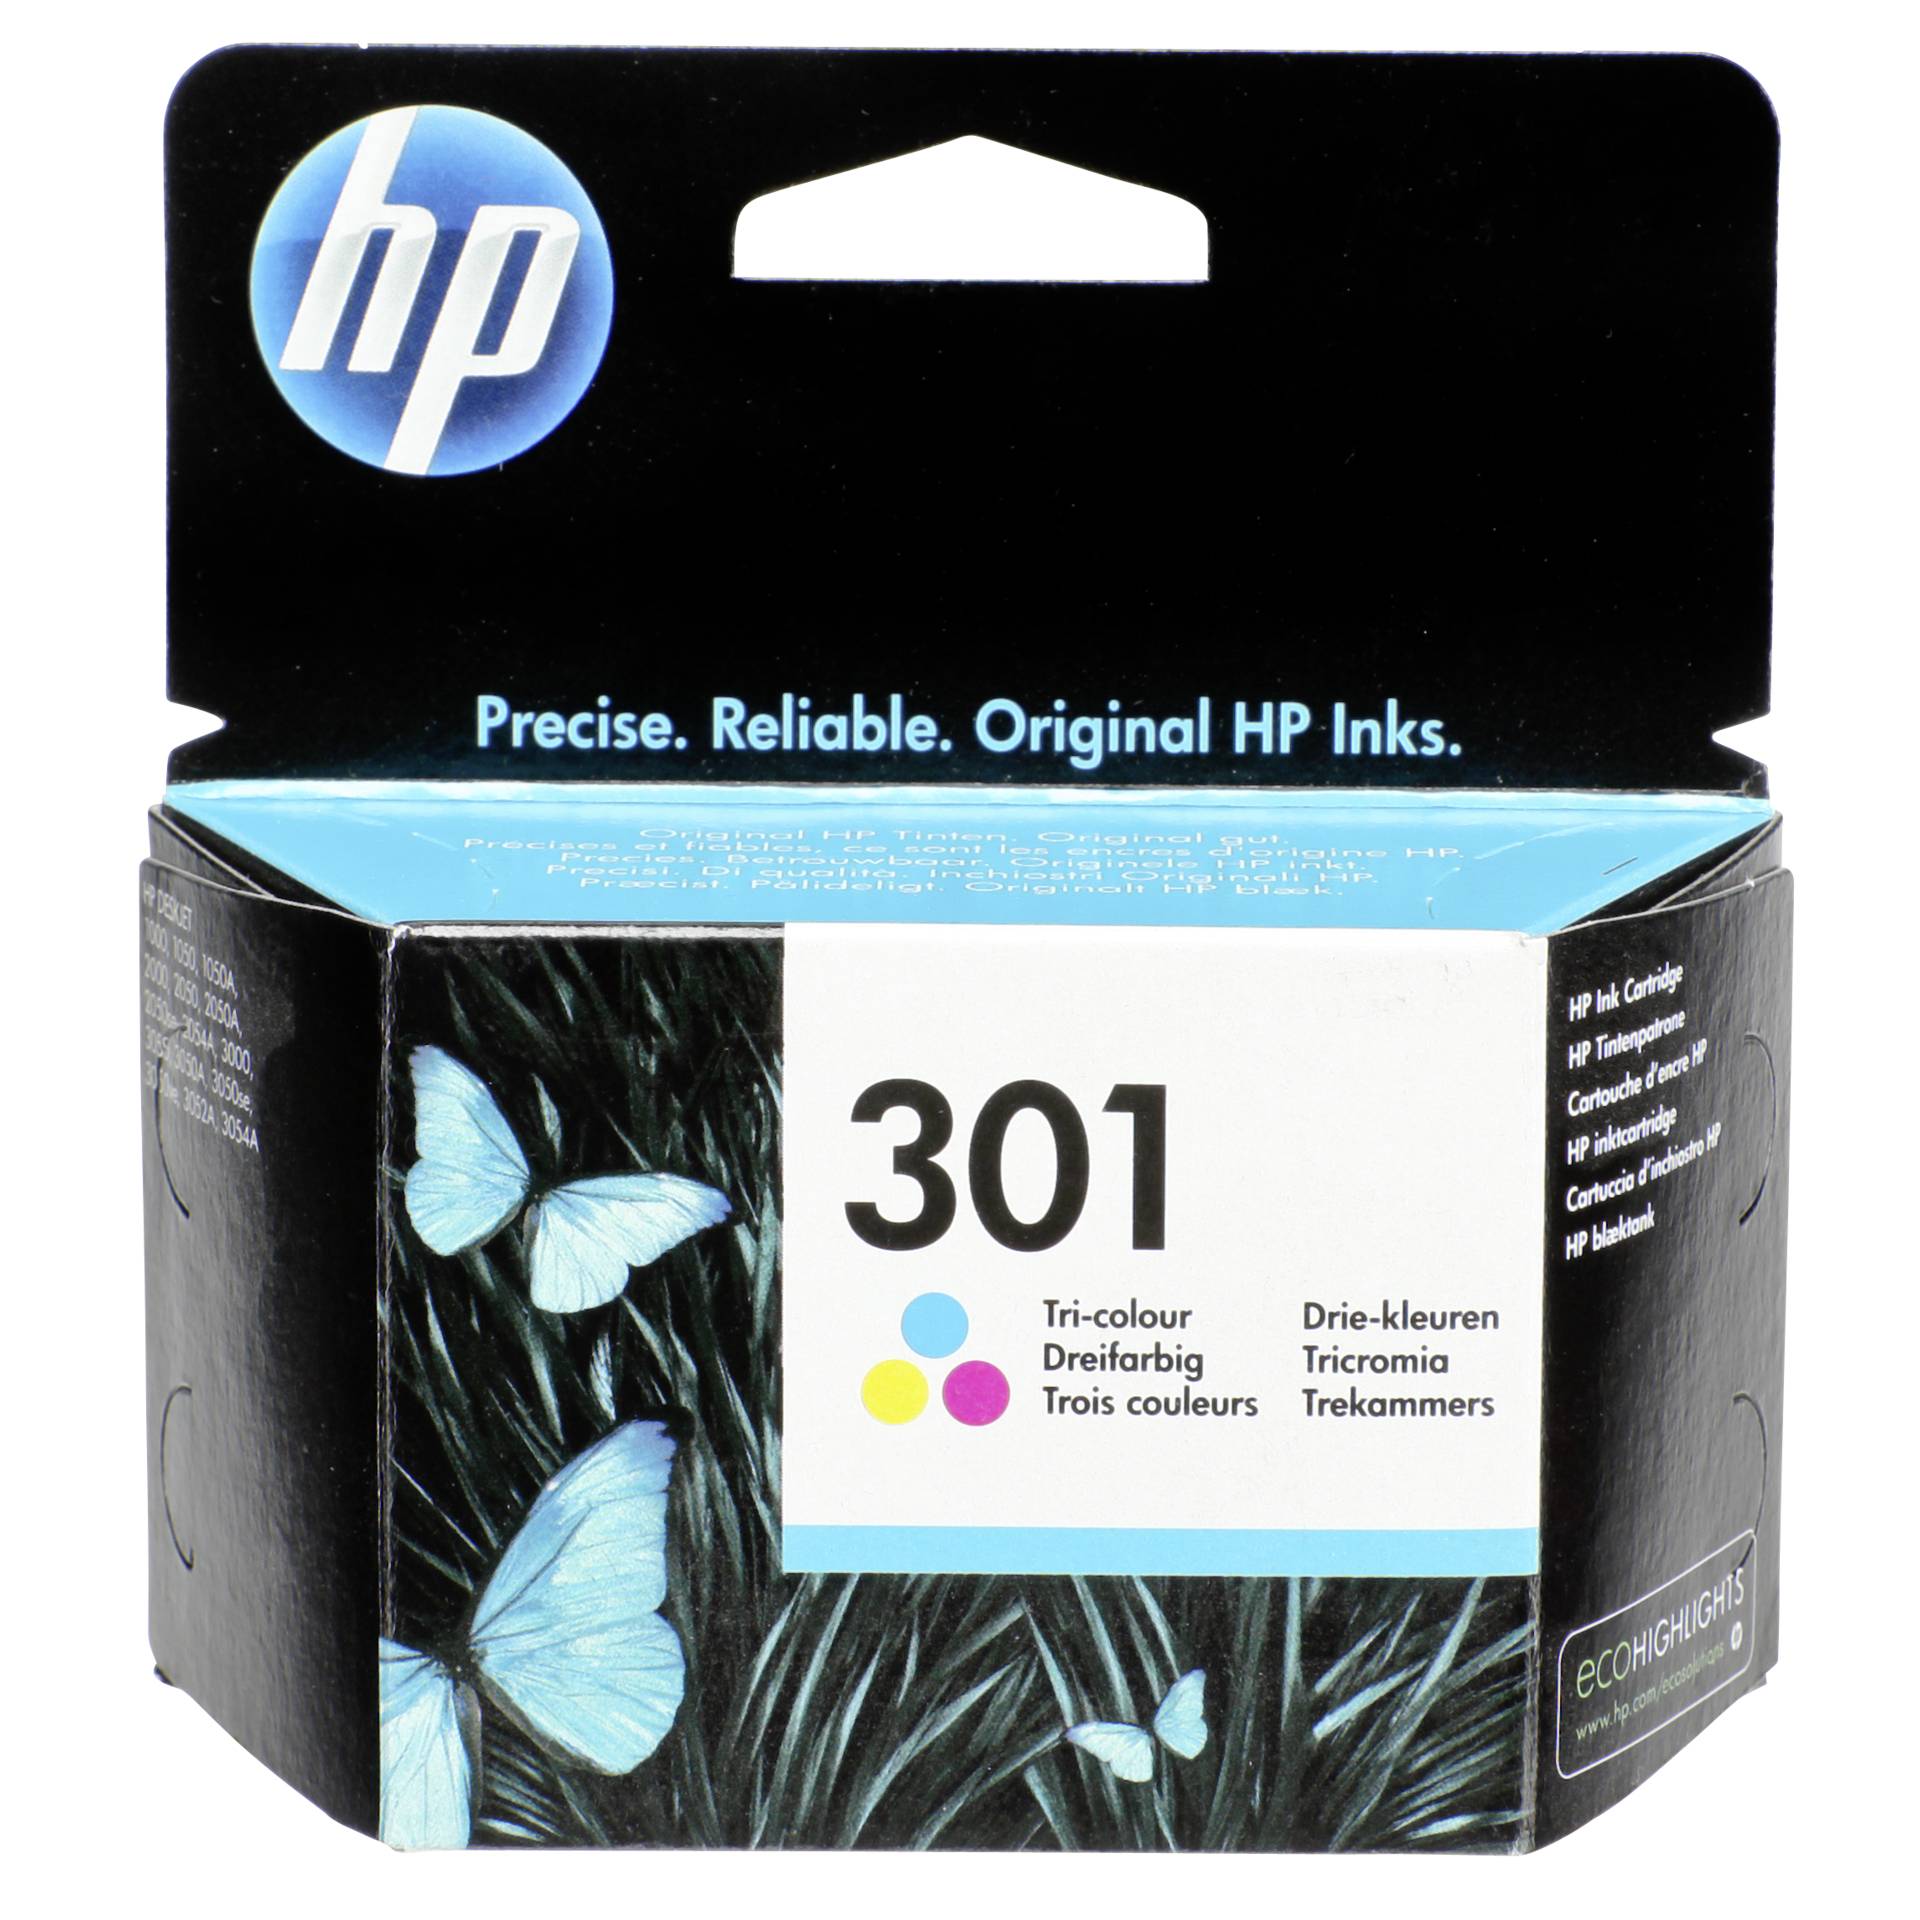 HP Druckkopf mit Tinte 301 dreifarbig 165 Seiten